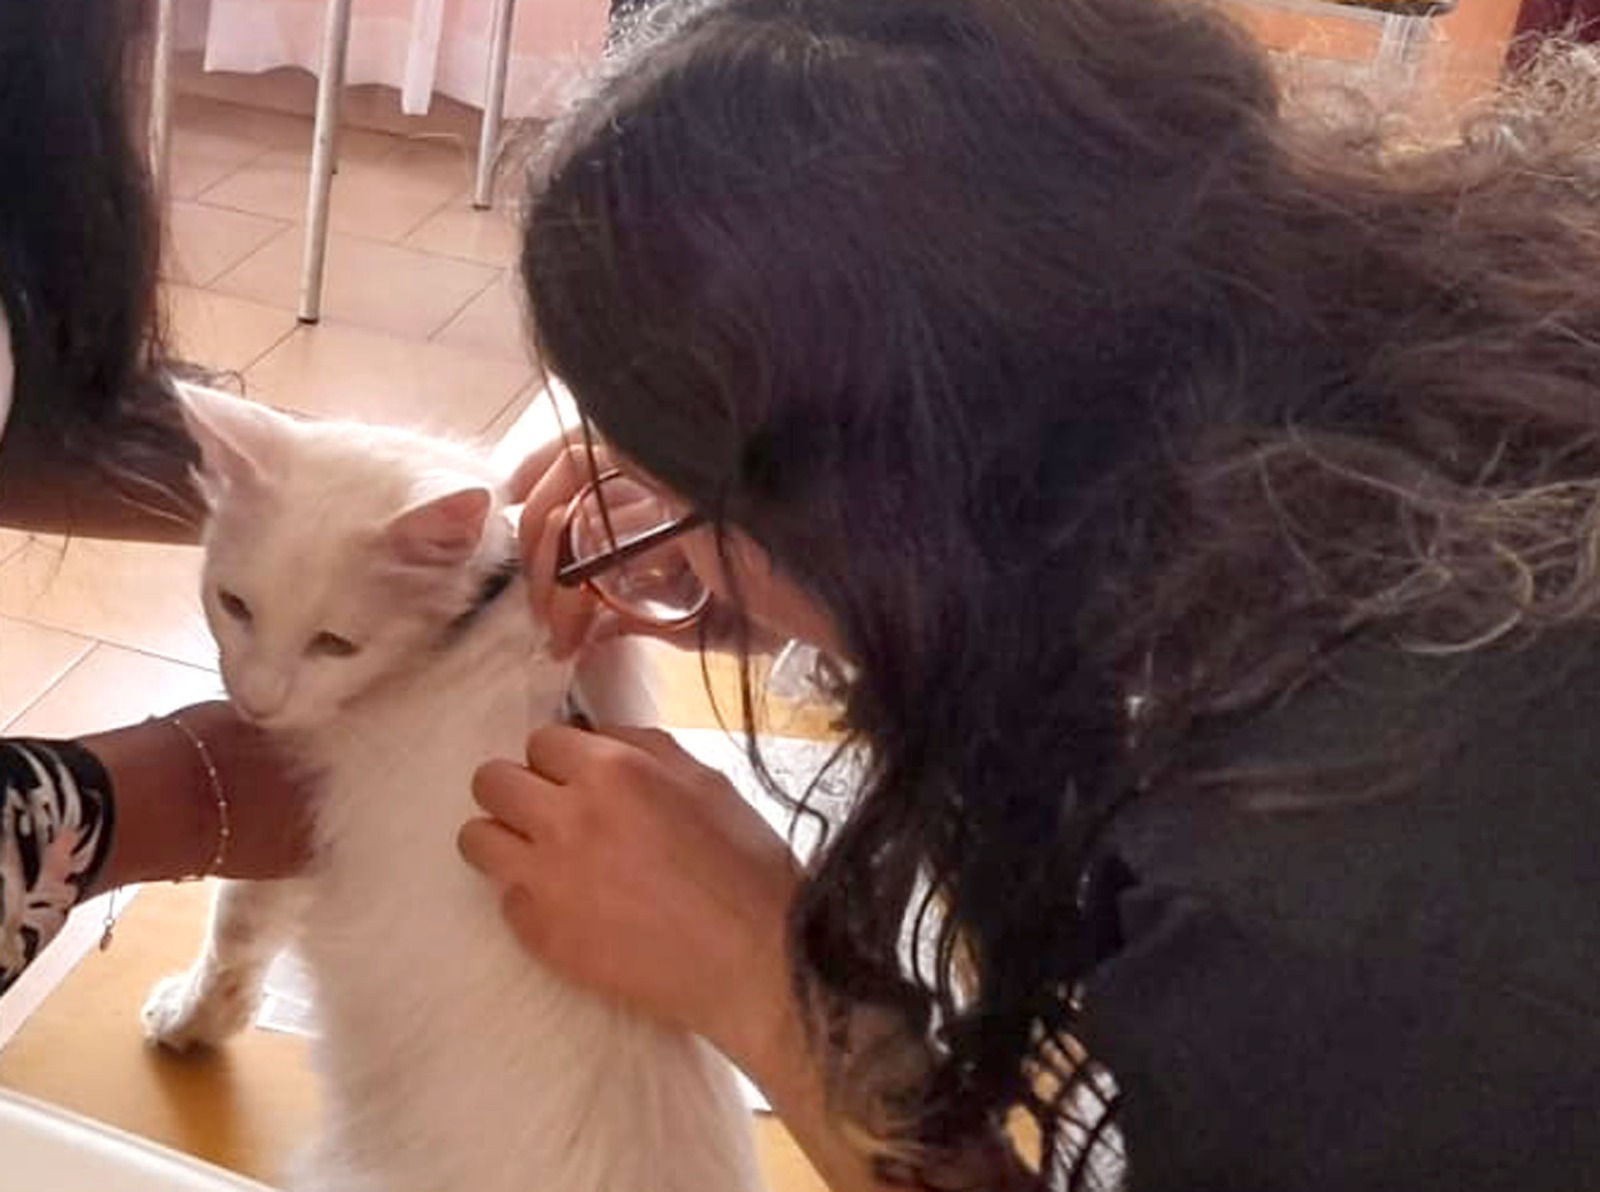 LOS ANDES: Municipio andino está realizando 31 operativos veterinarios para la implantación de microchip en mascotas